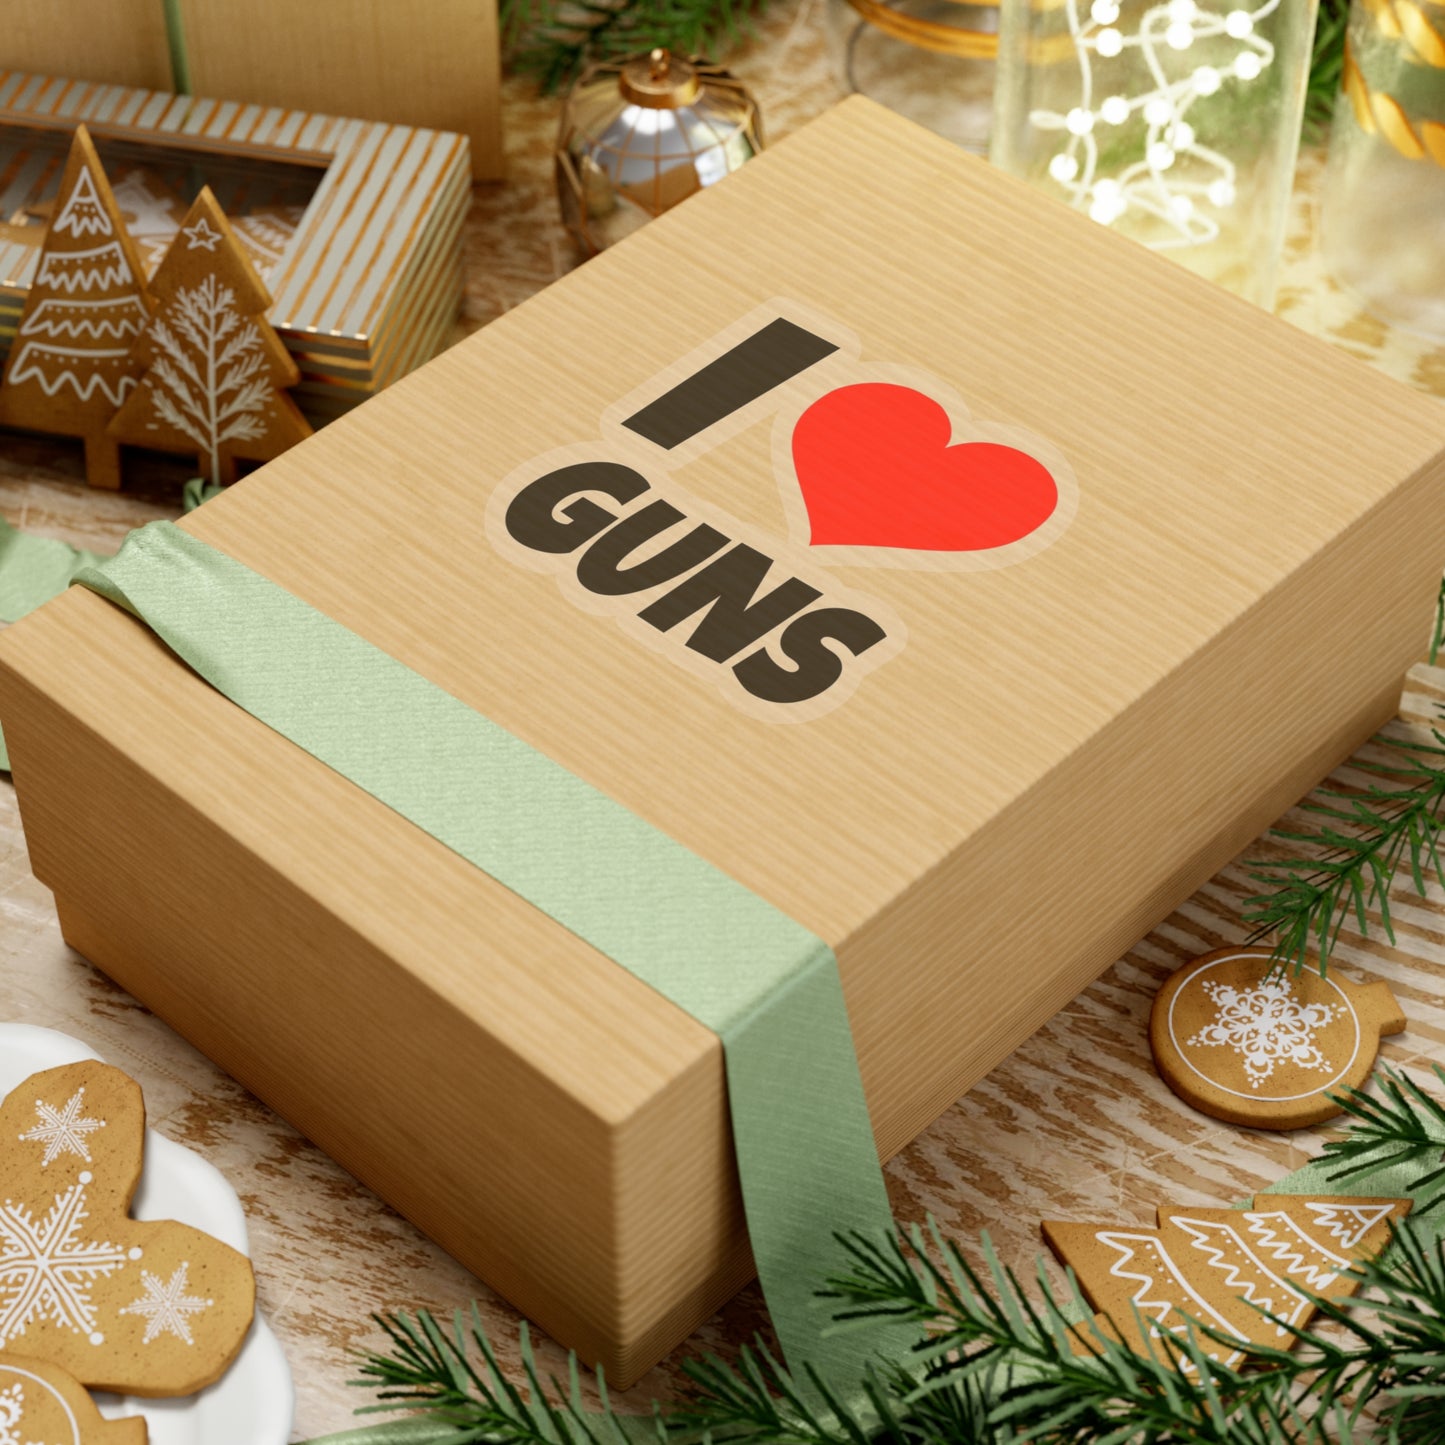 I Love Guns - Kiss-Cut Stickers